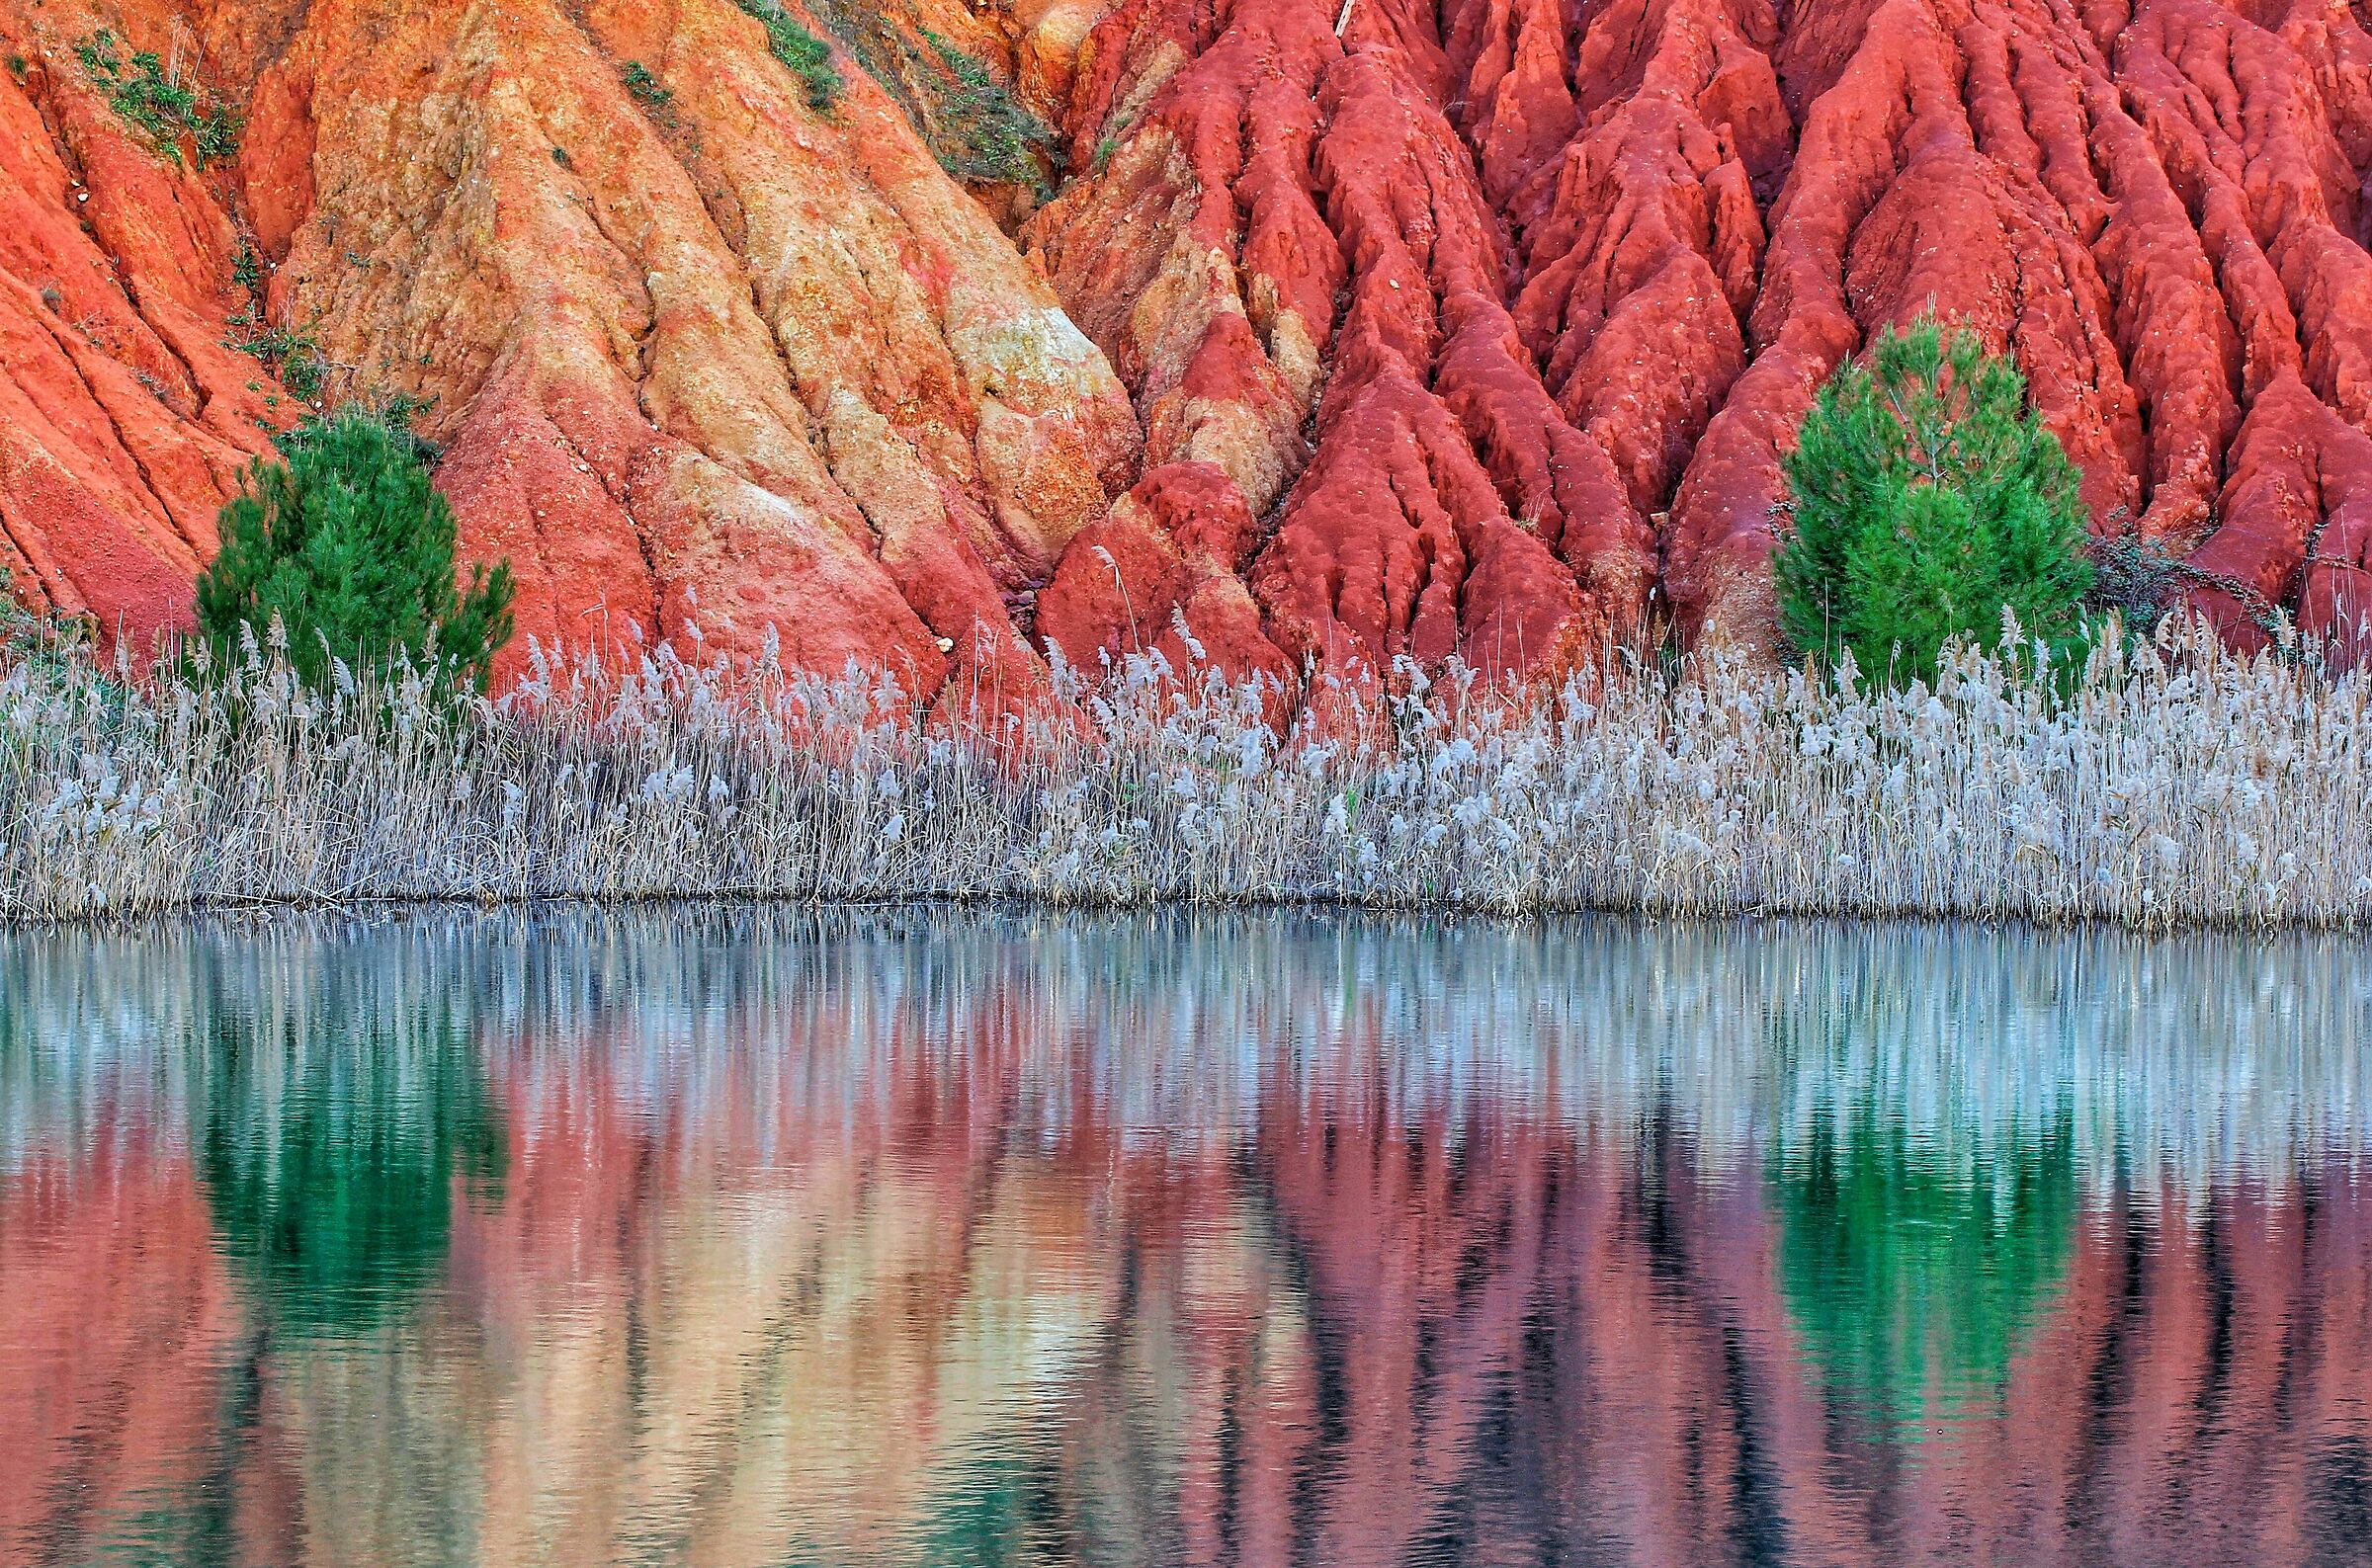 I colori del lago di bauxite...